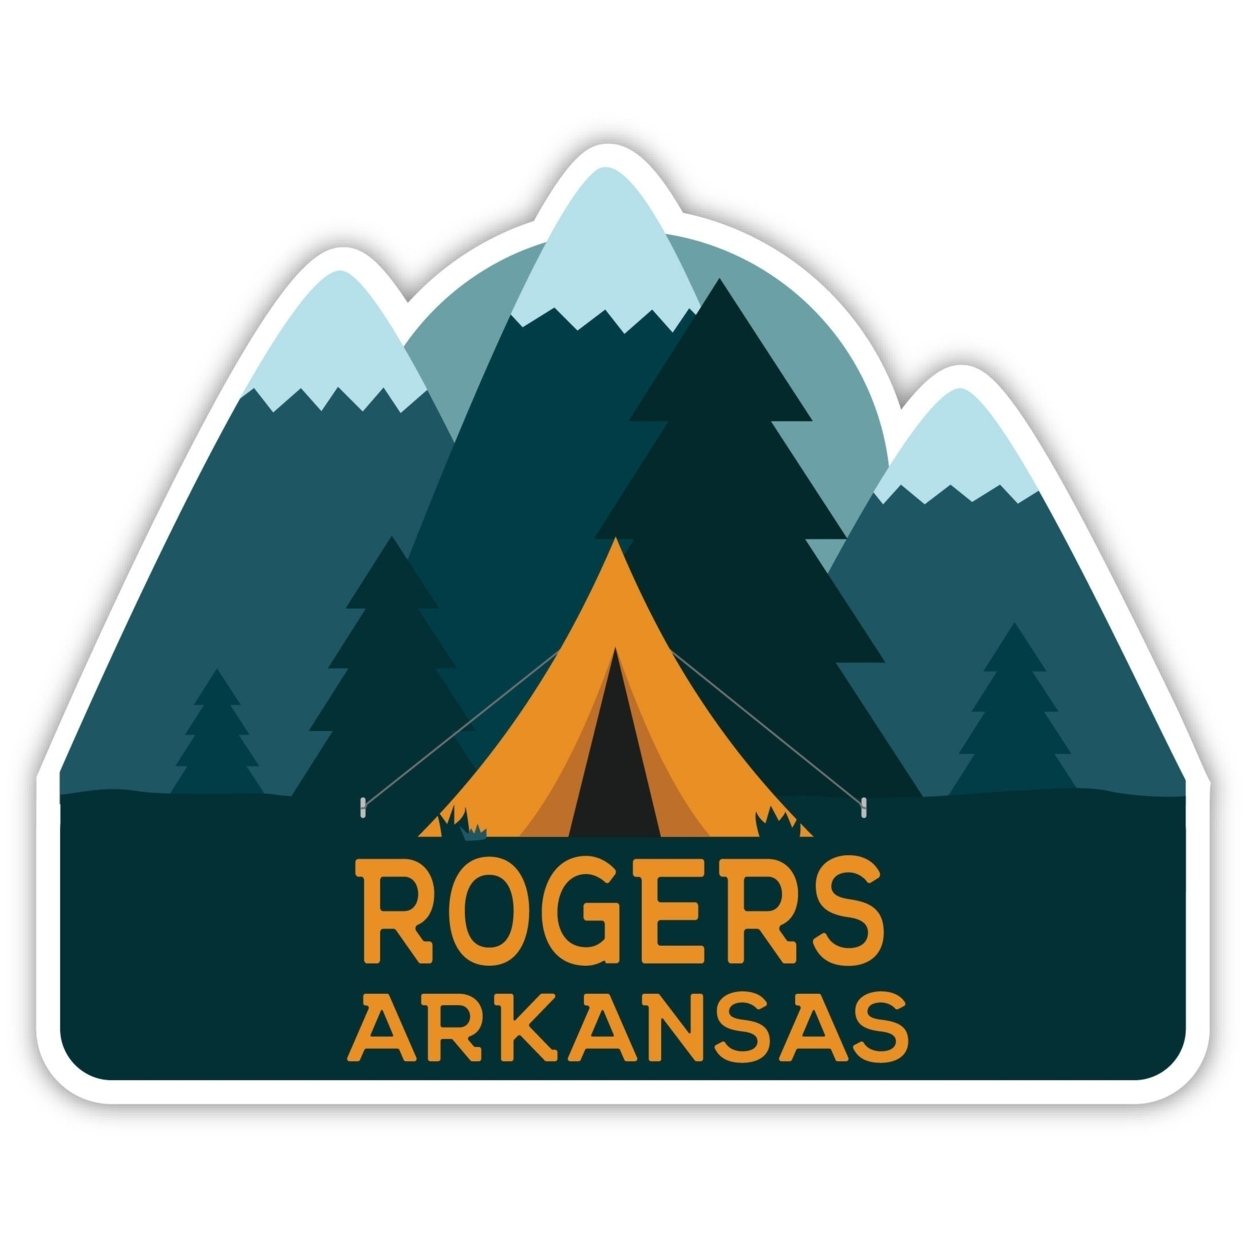 Rogers Arkansas Souvenir Decorative Stickers (Choose Theme And Size) - Single Unit, 4-Inch, Tent